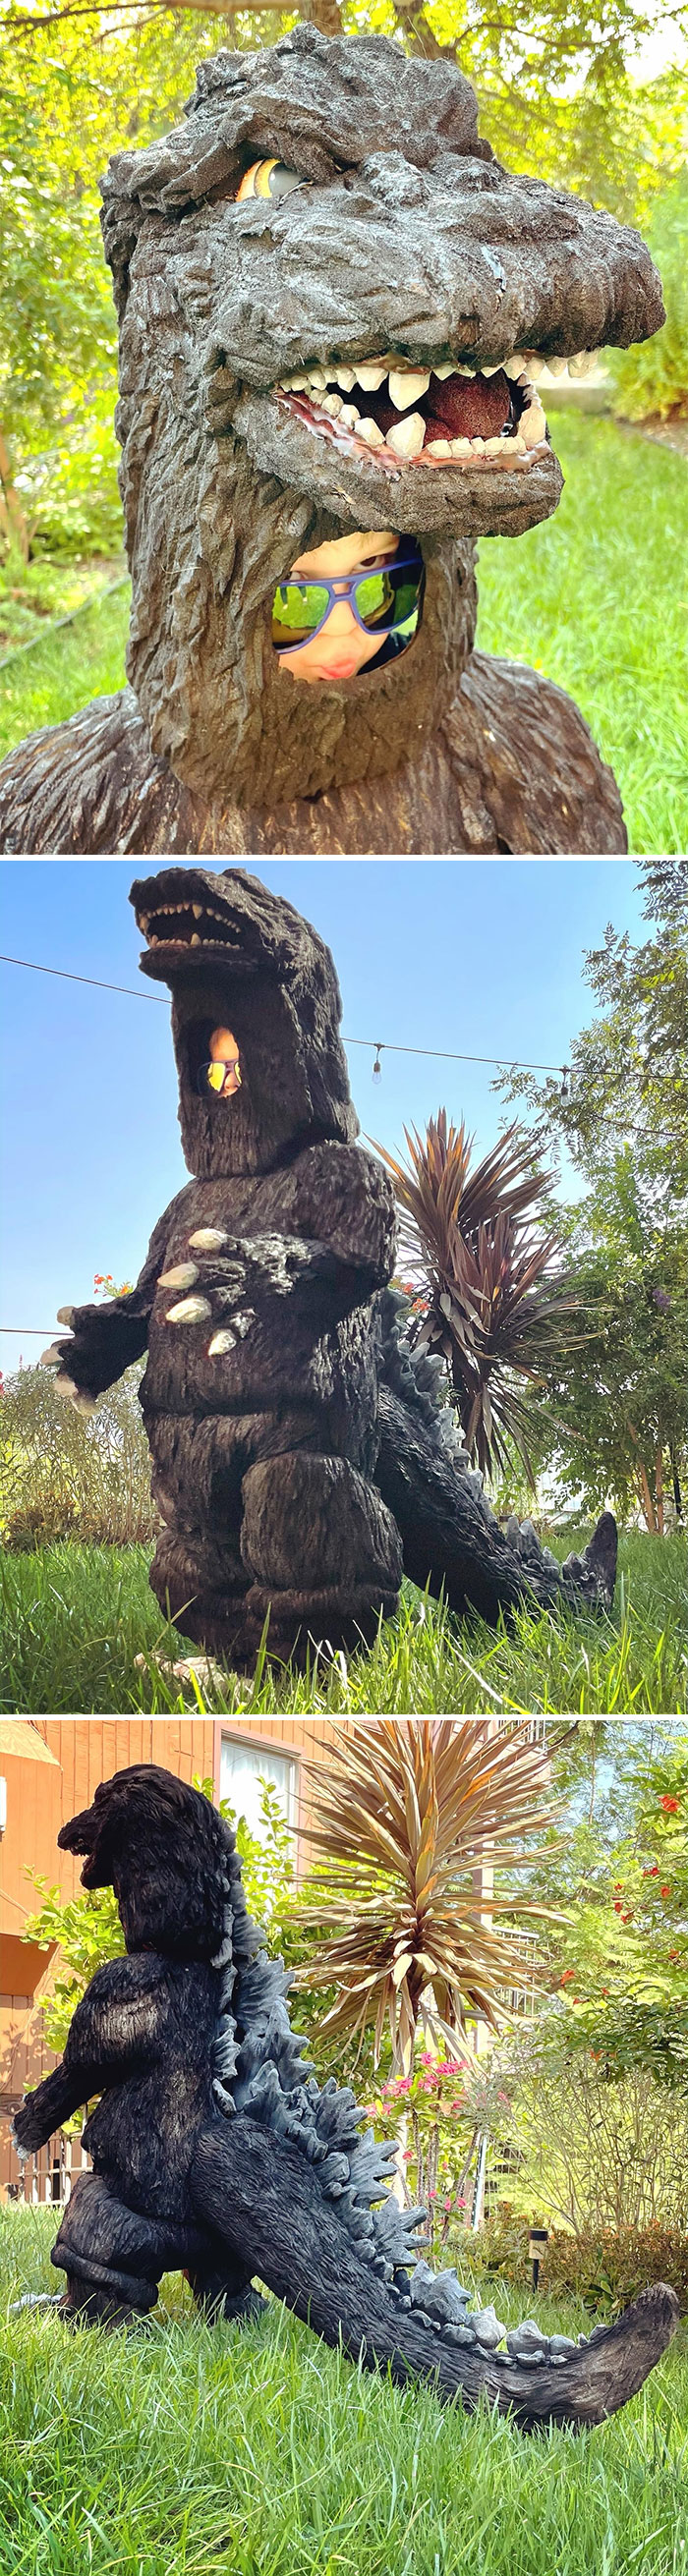 Le he hecho un disfraz de Godzilla a mi hijo de 3 años